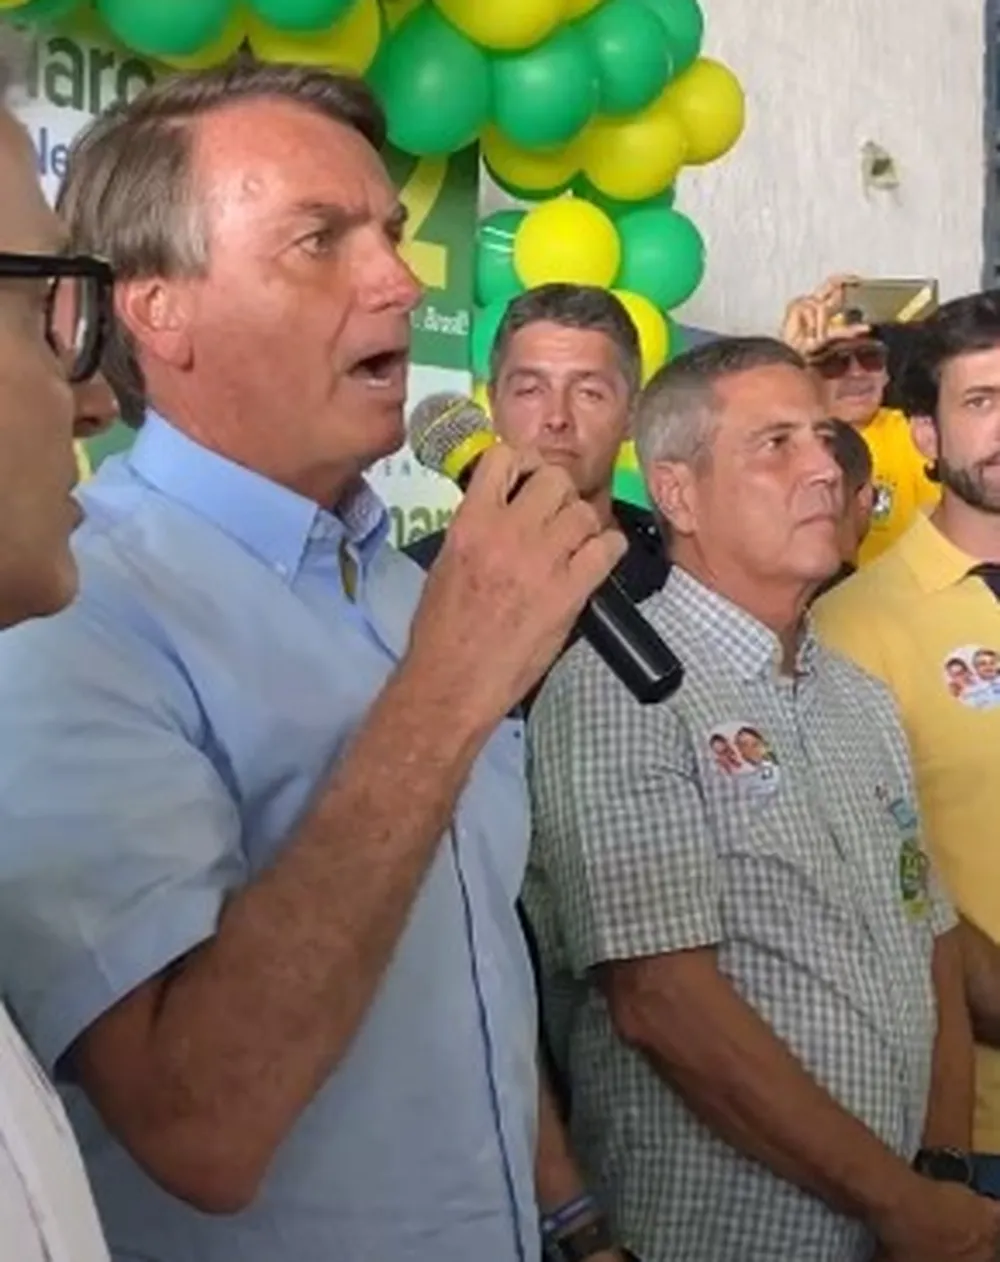 Bolsonaro vem a Minas pela sexta vez no segundo turno para reverter desvantagem no estado